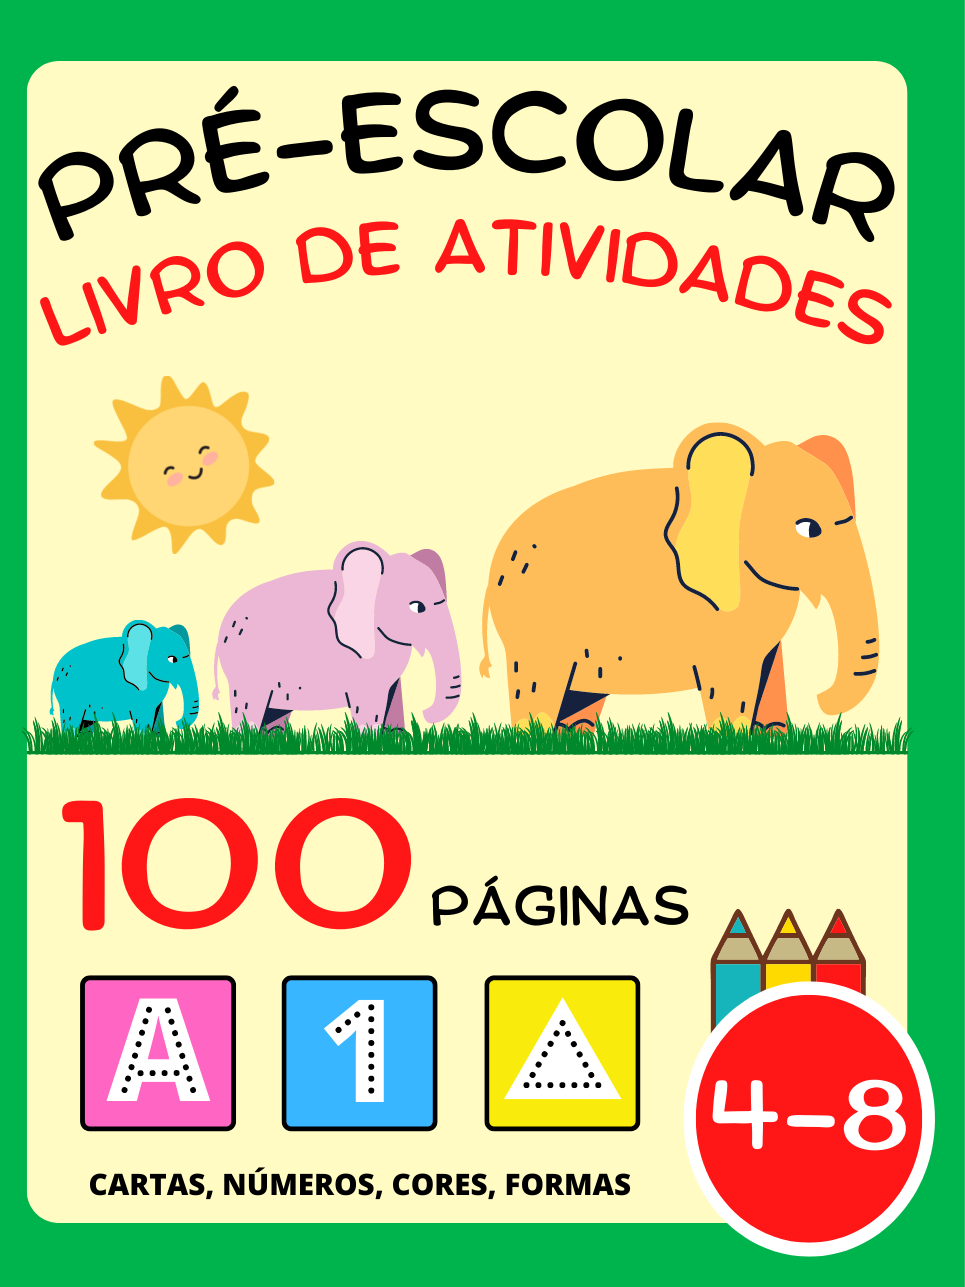 Livro de Atividades para Pré-Escolar para Crianças 4-8 Anos